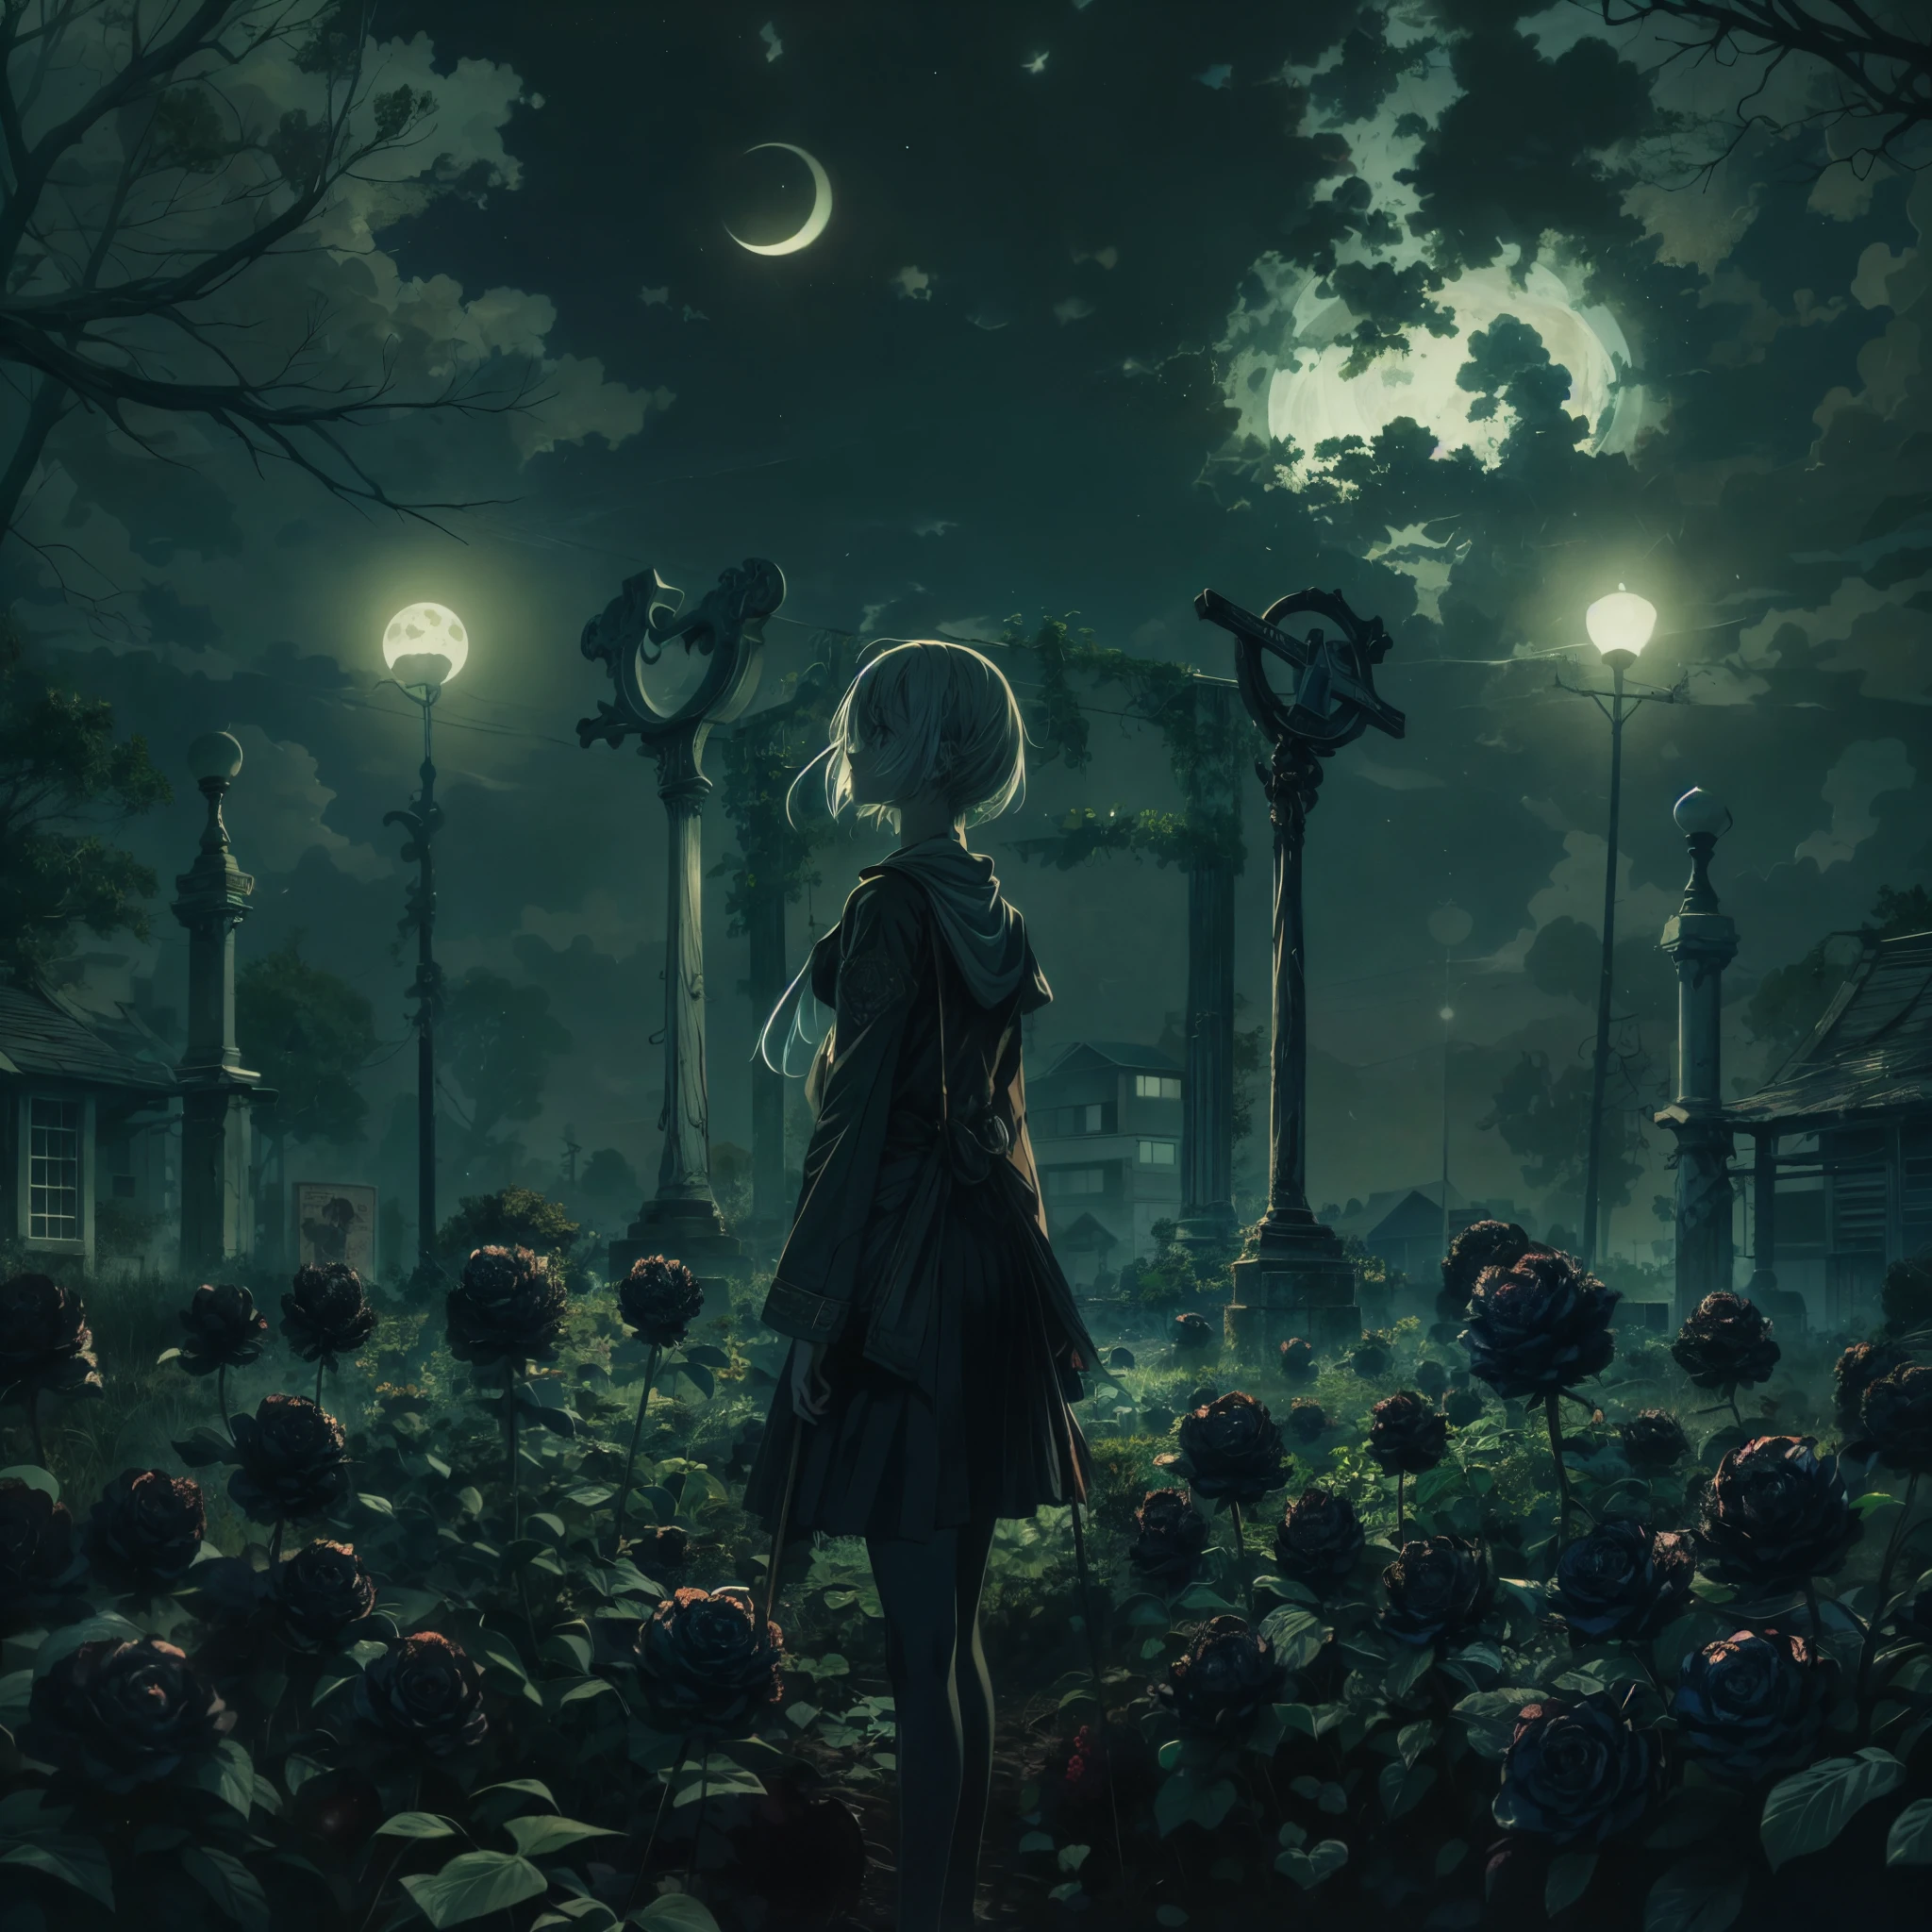 Erstellen Sie ein Bild im Stil von Kyle Thompson, mit einer Mädchenfigur im Anime-Stil. Sie steht in einem verlassenen Park voller schwarzer Rosen, symbolisiert den Tod. Die Szene wird vom Mondlicht beleuchtet, das dem Bild Tiefe verleiht. Verwenden Sie eine geringe Fokussierung, um das Mädchen und die unmittelbare Umgebung hervorzuheben, während der Hintergrund sanft verschwimmt. Im Vordergrund, den Schatten eines Kreuzes einschließen, Hinzufügen eines dramatischen und symbolischen Elements zur Szene. Der Kontrast zwischen der fotorealistischen Kulisse im Kyle-Thompson-Stil und dem Charakter im Anime-Stil dürfte auffällig sein, die Unterschiede in den künstlerischen Medien effektiv zu synthetisieren.